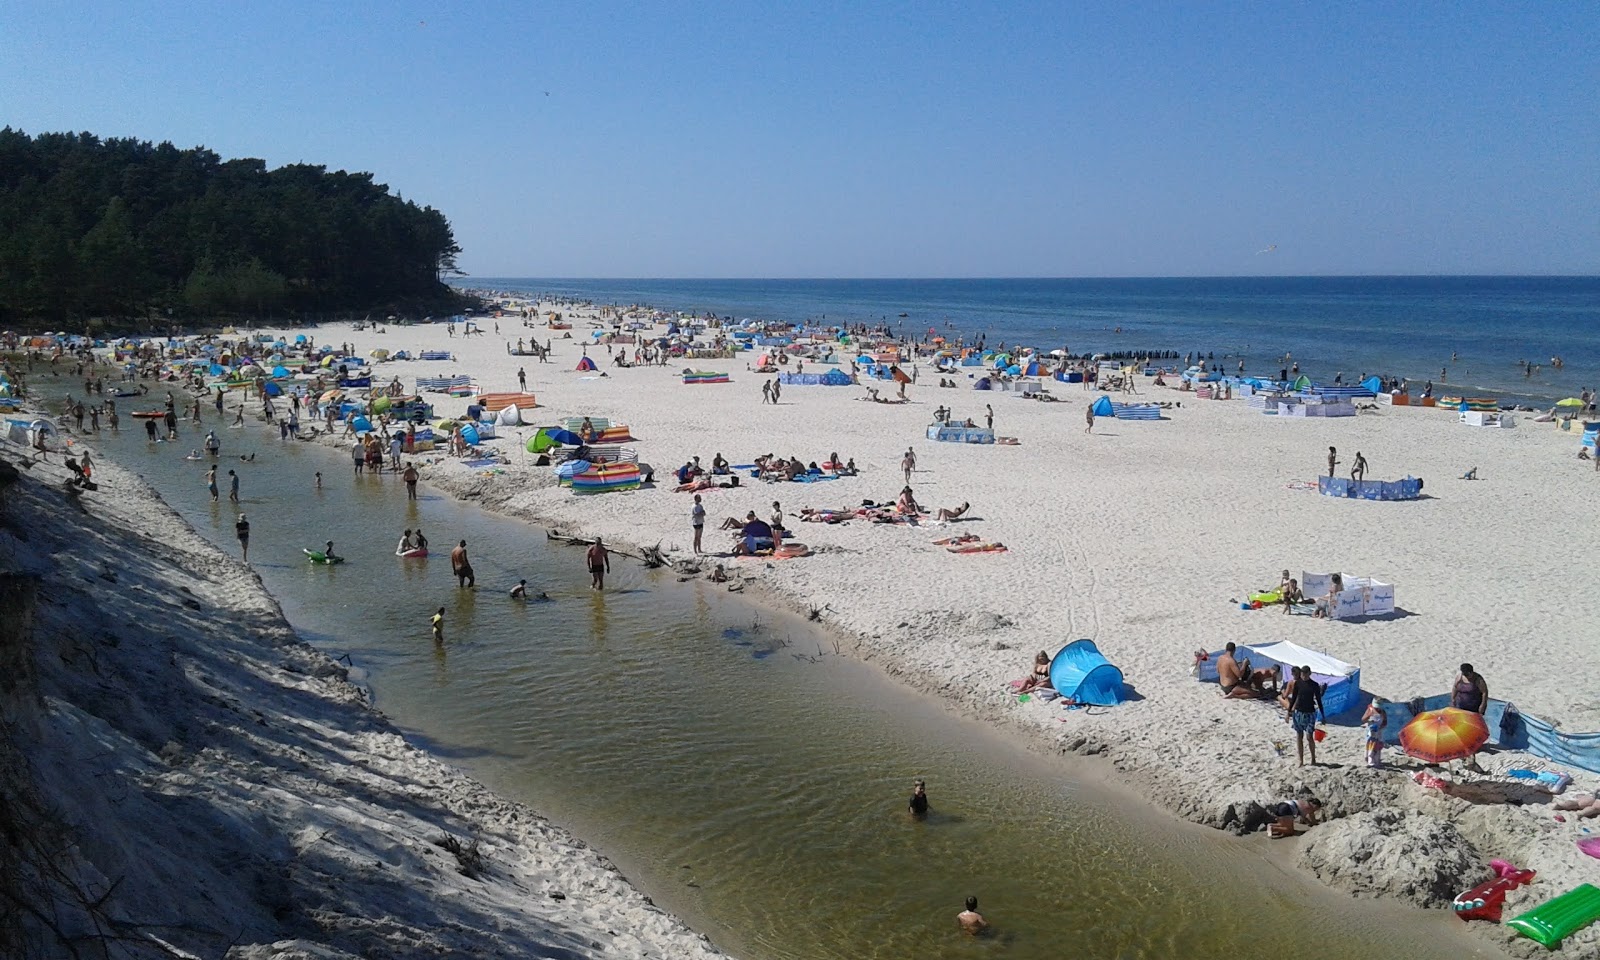 Fotografie cu Pyasnitsa Beach (nr 25) cu o suprafață de nisip fin strălucitor